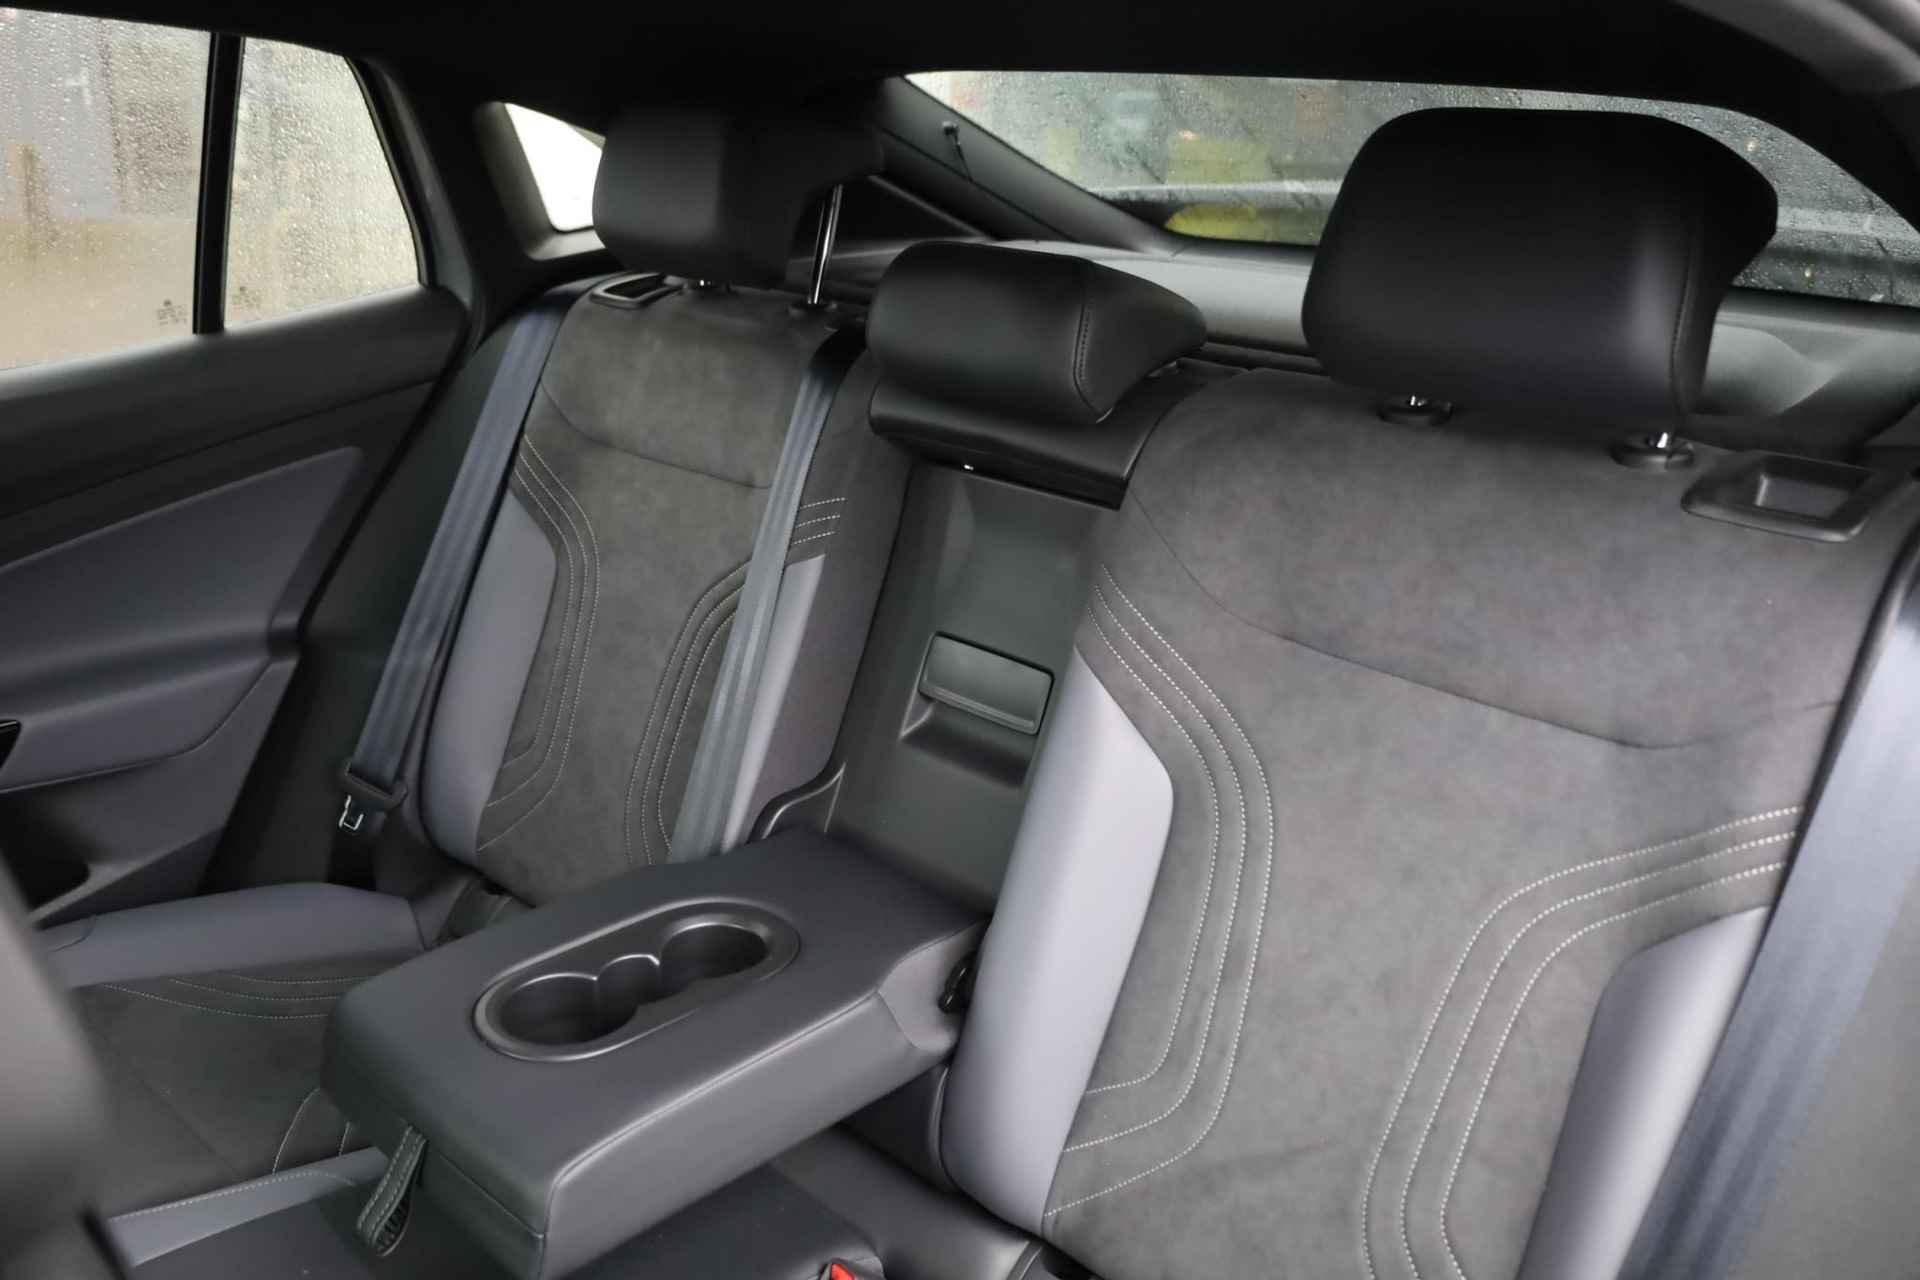 Volkswagen ID.5 Pro 77 kWh NL auto, nieuw door ons verkocht en geleverd, designpakket (led matrix privacy glas led strip tussen koplampen), comfort pakket (stoel en stuurwiel en voorruit verwarming), navigatie pakket, 20" drammen lmv, assitance pakket, keyless entry, achteruitrijcamera - 38/40